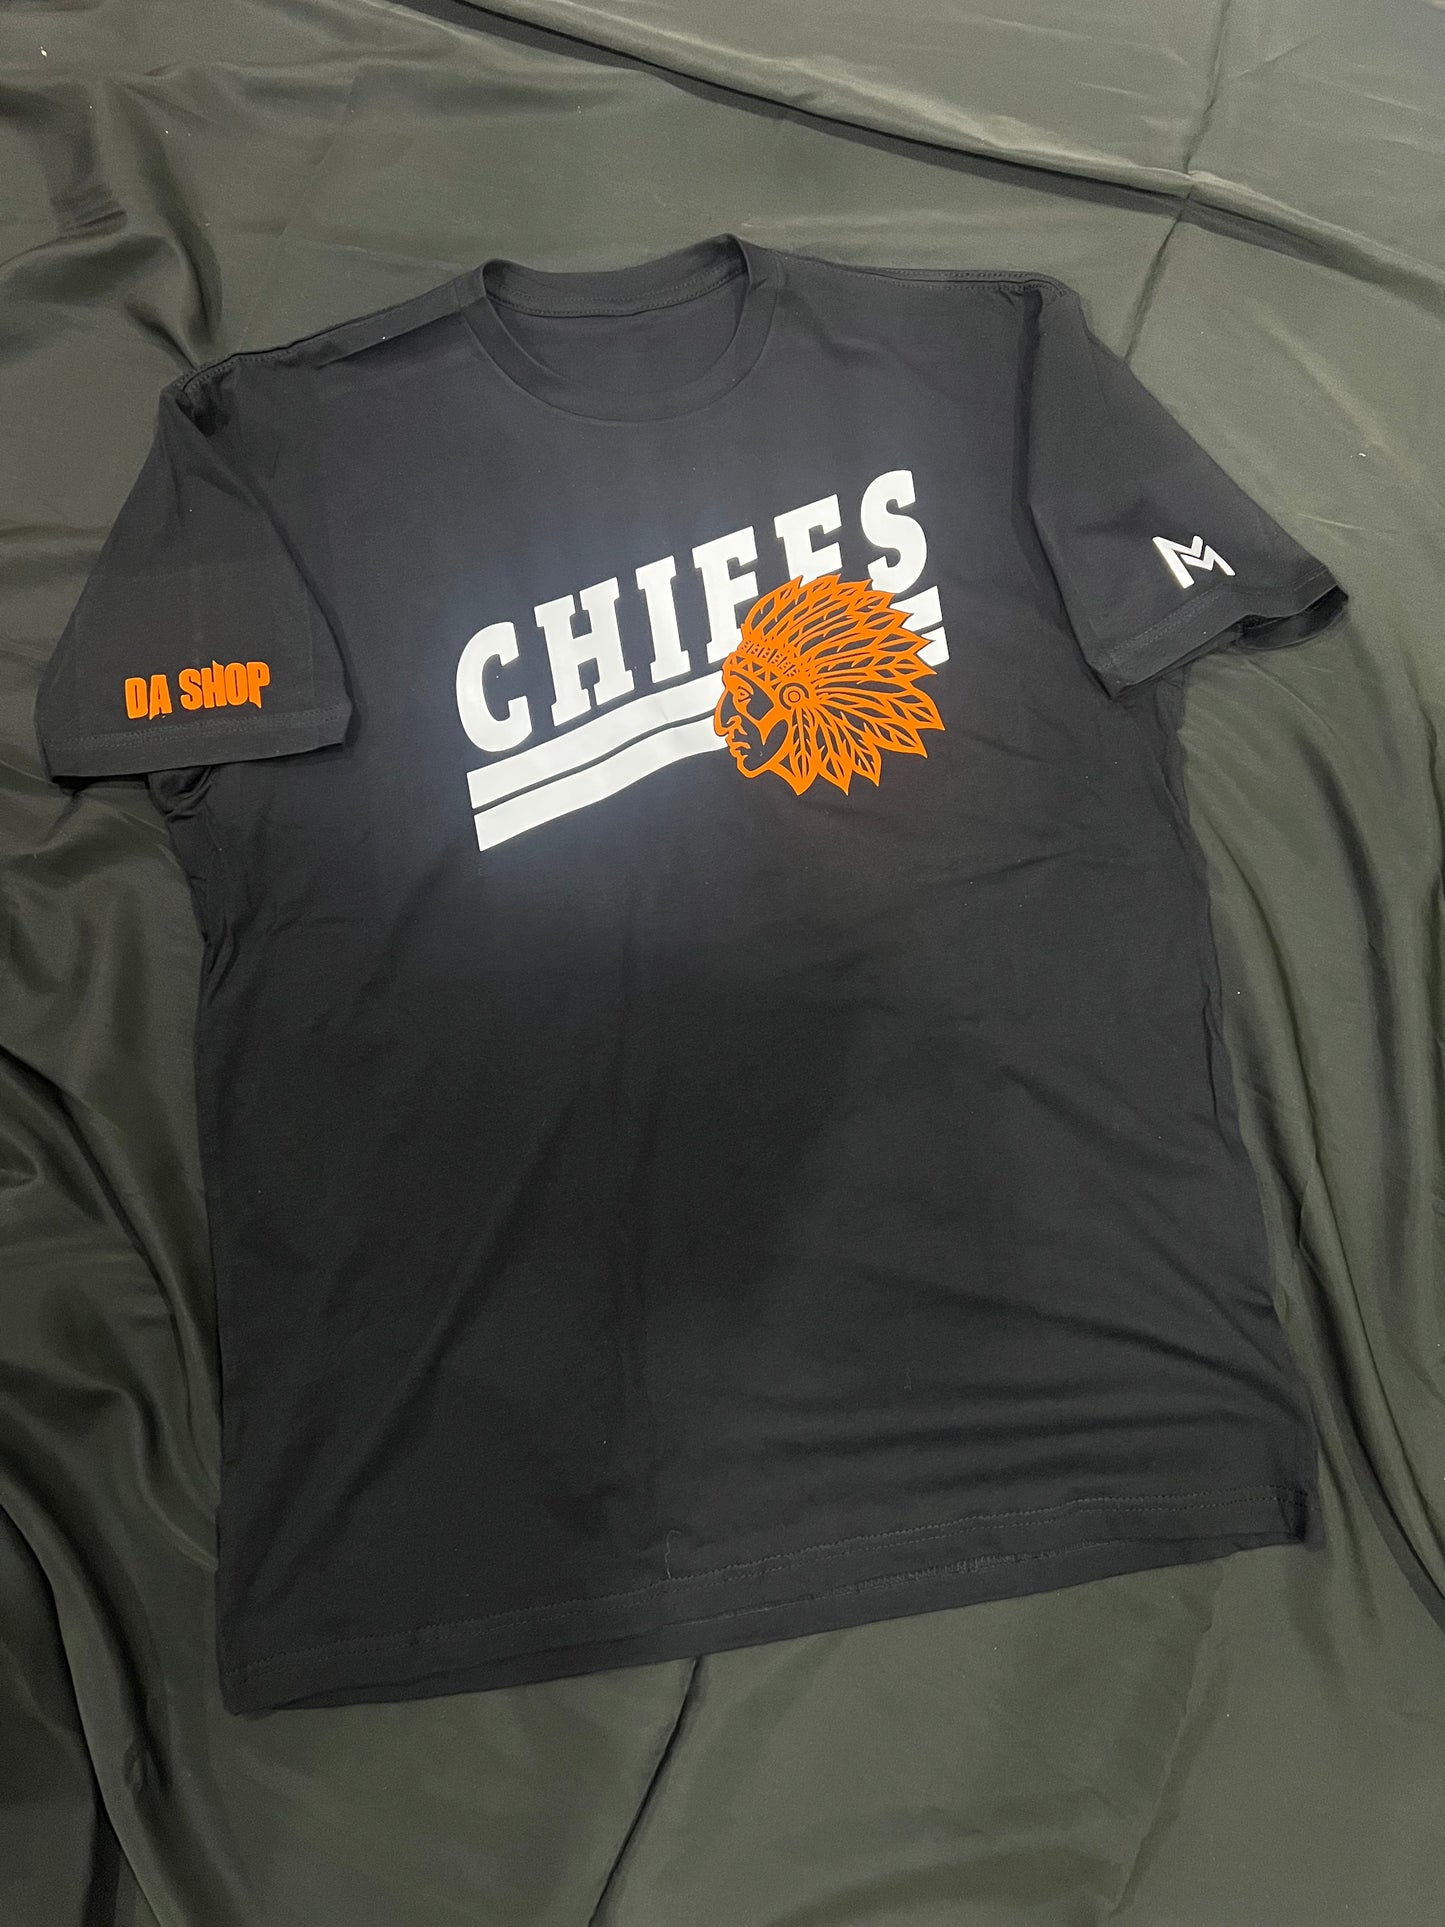 Chief Pride (Black Shirt)